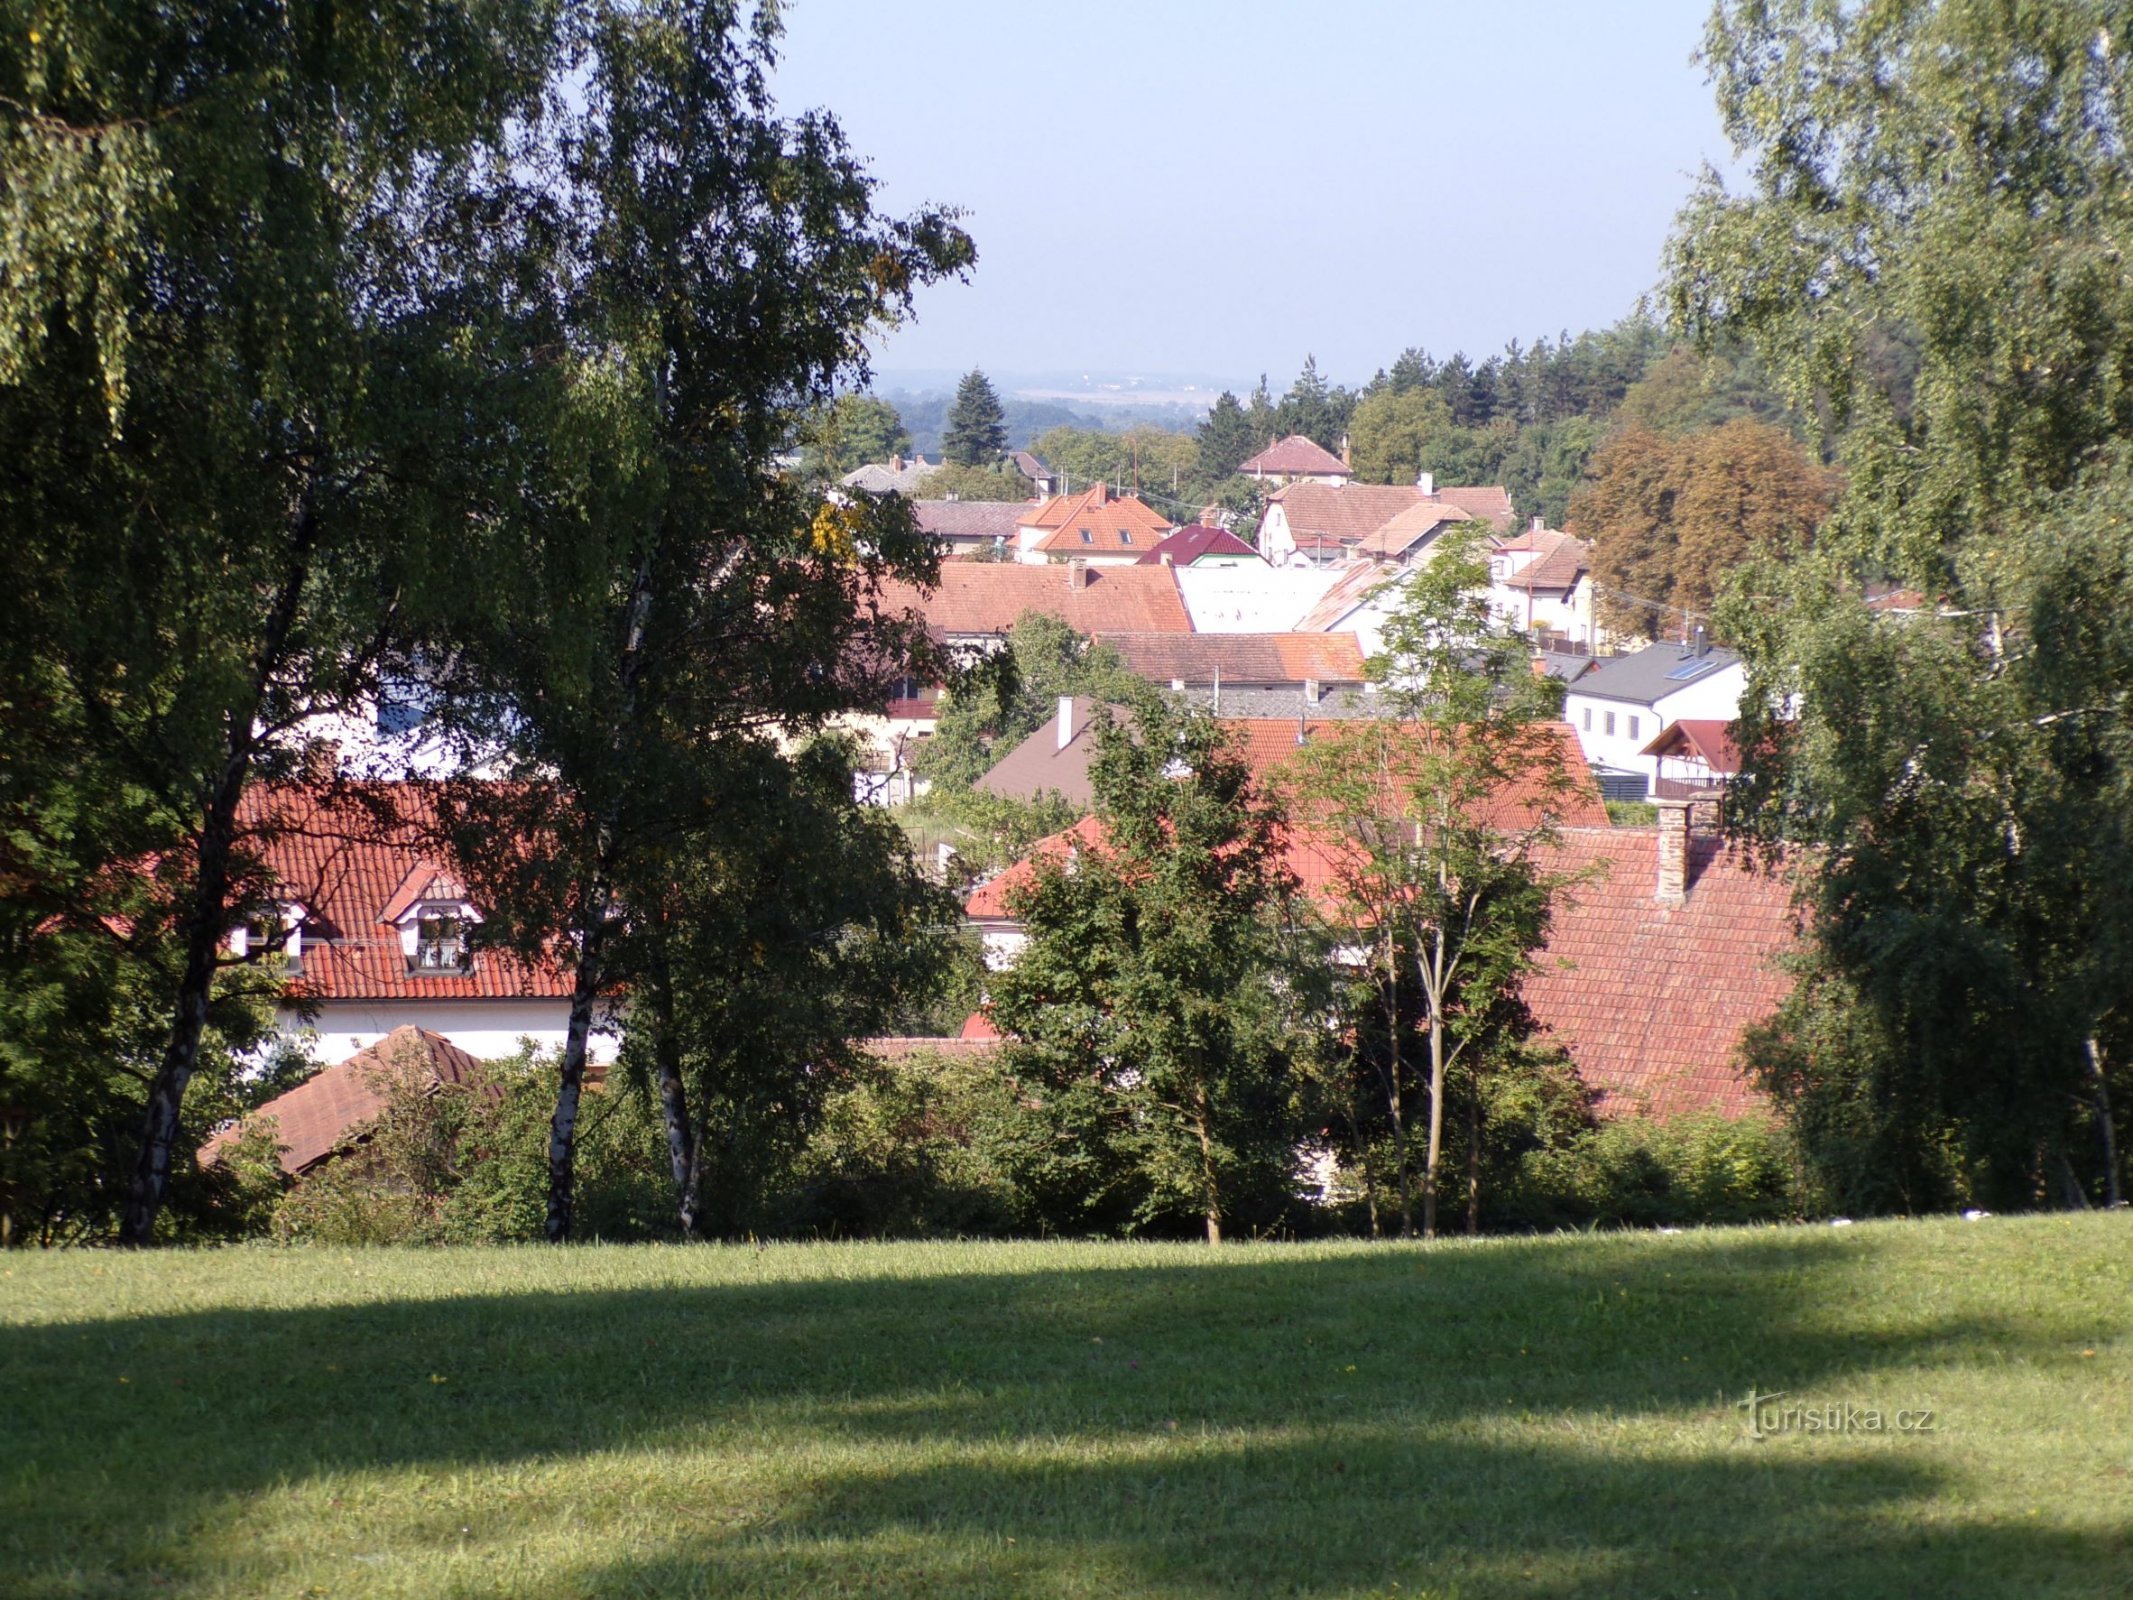 Vysoka nad Labem từ số 101 (ngày 3.9.2021 tháng XNUMX năm XNUMX)